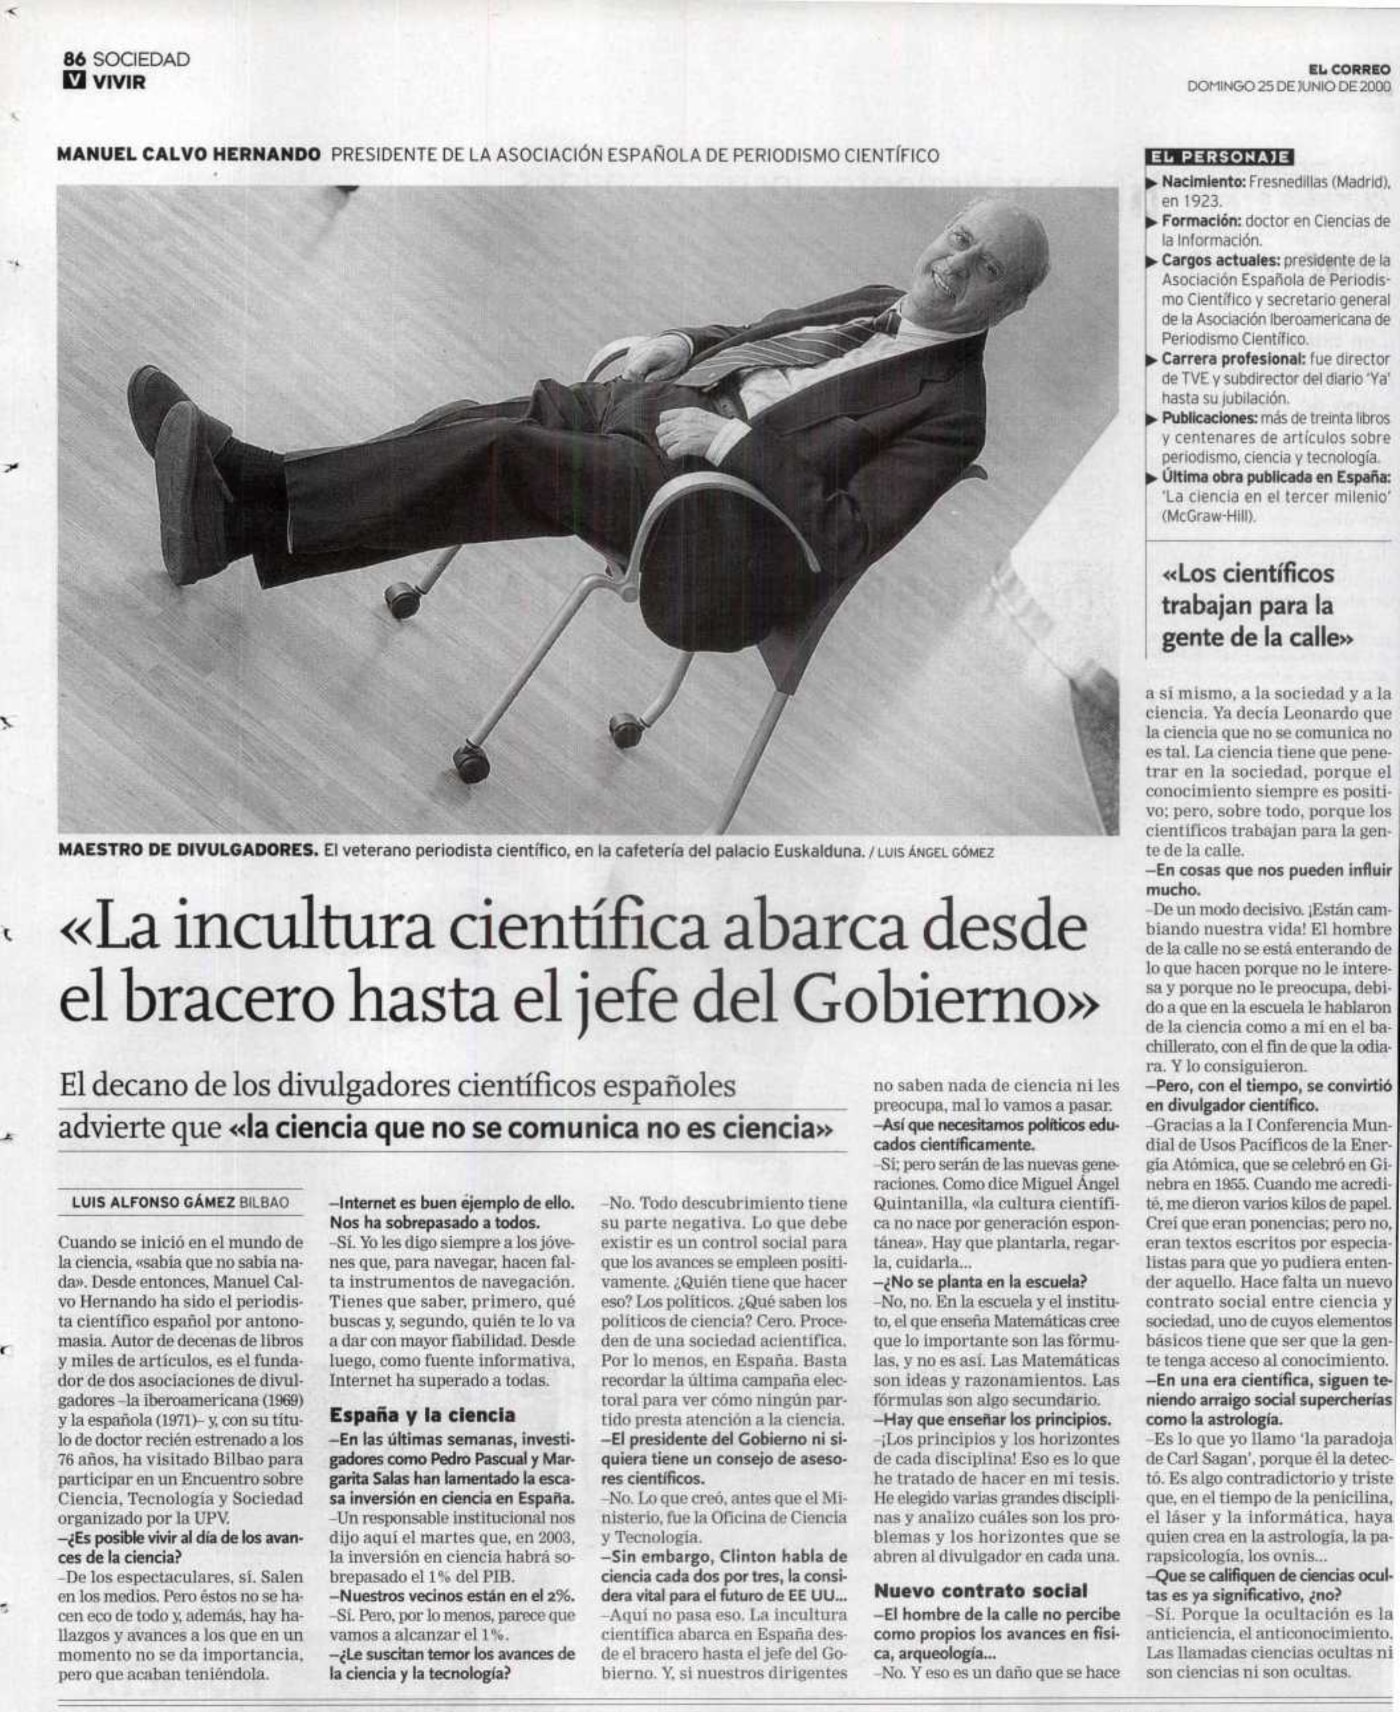 Entrevista al periodista Manuel Calvo Hernando publicada en el diario 'El Correo' en septiembre de 2000.